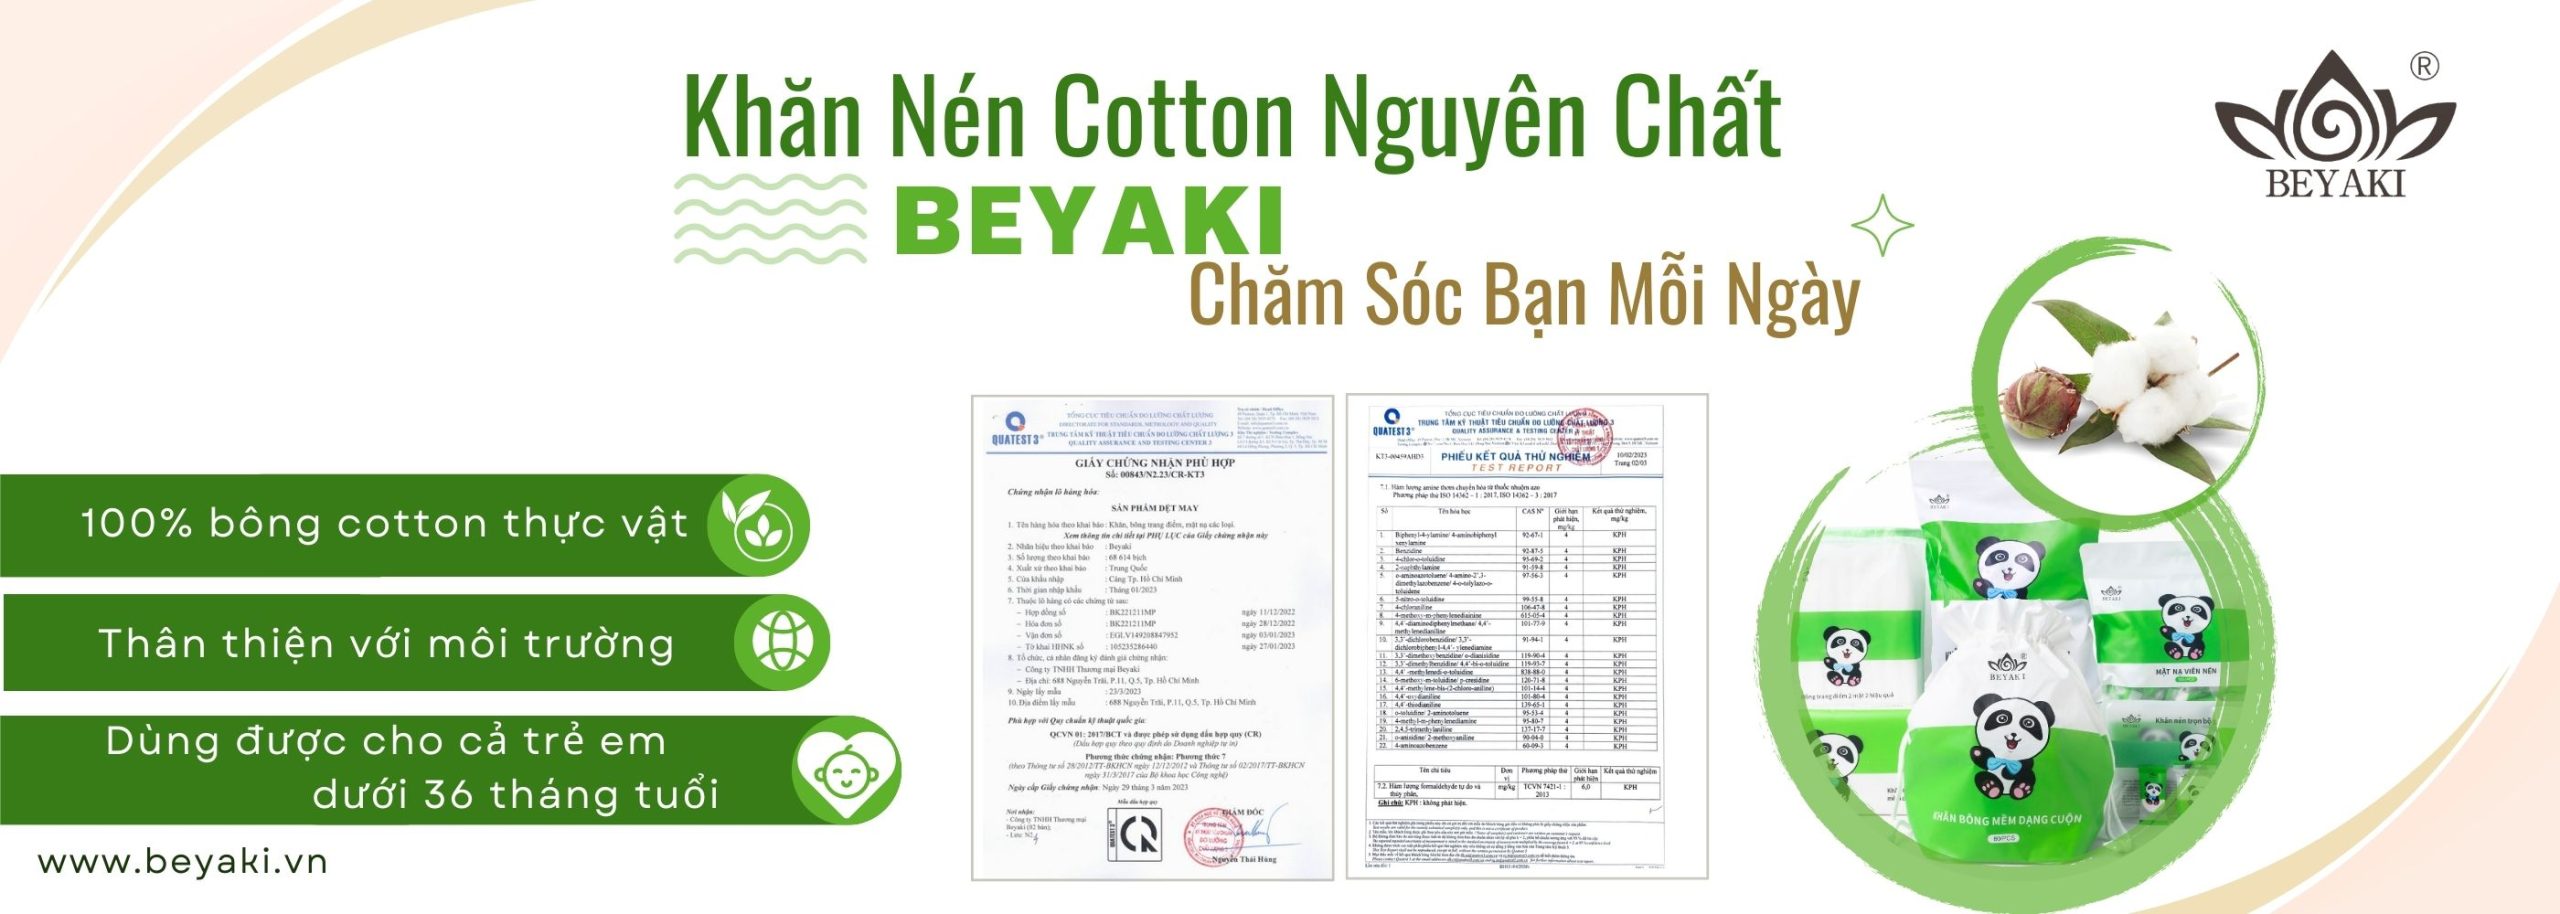 Sản phẩm khăn cotton Beyaki dùng 100% bông thực vật , có kiểm nghiệm theo luật bộ công thương. Ảnh : nguồn Beyaki